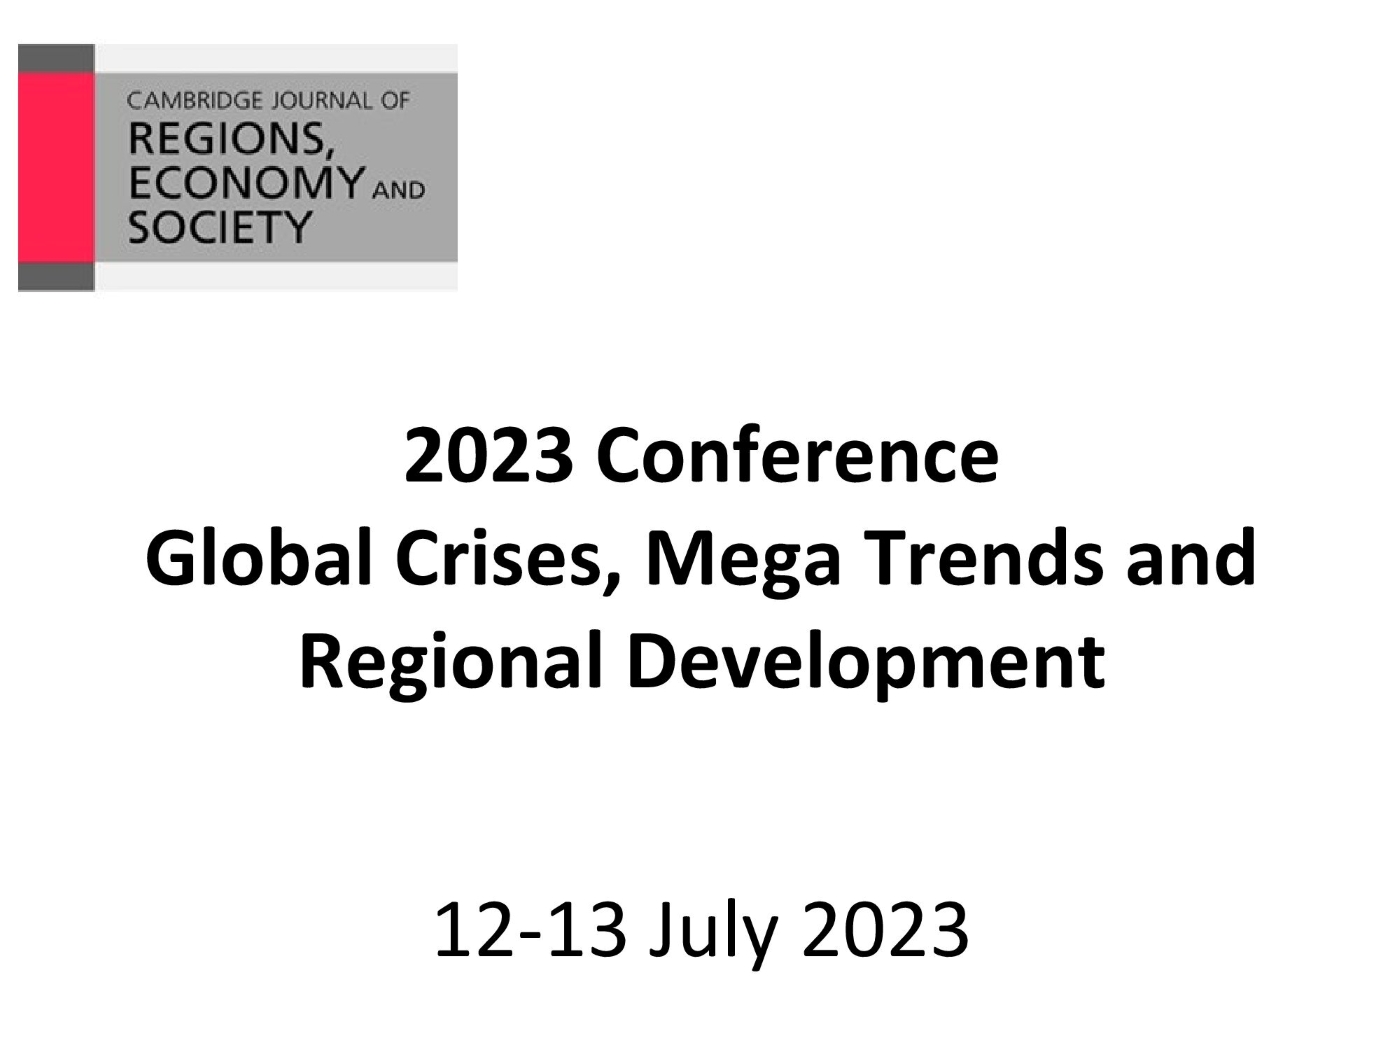 CJRES 2023 Conference - Global Crises, Mega Trends and Regional Development's image